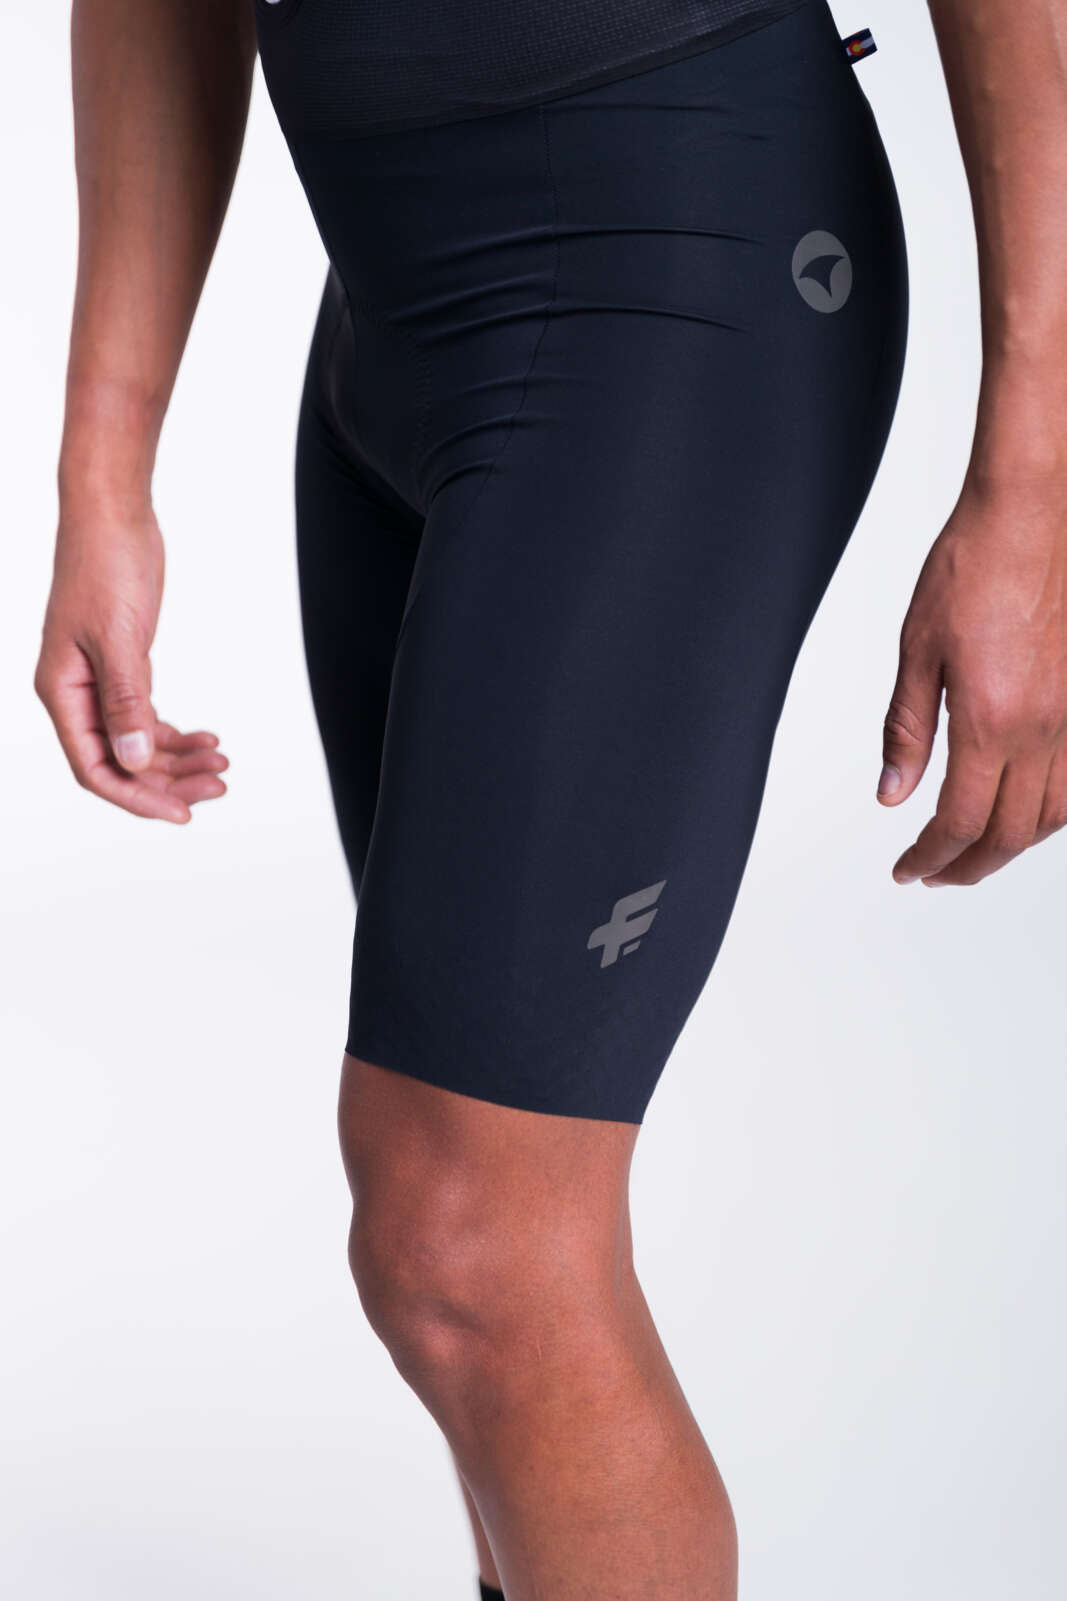 Men's Black Cycling Bibs - Flyte Leg Panel Detail